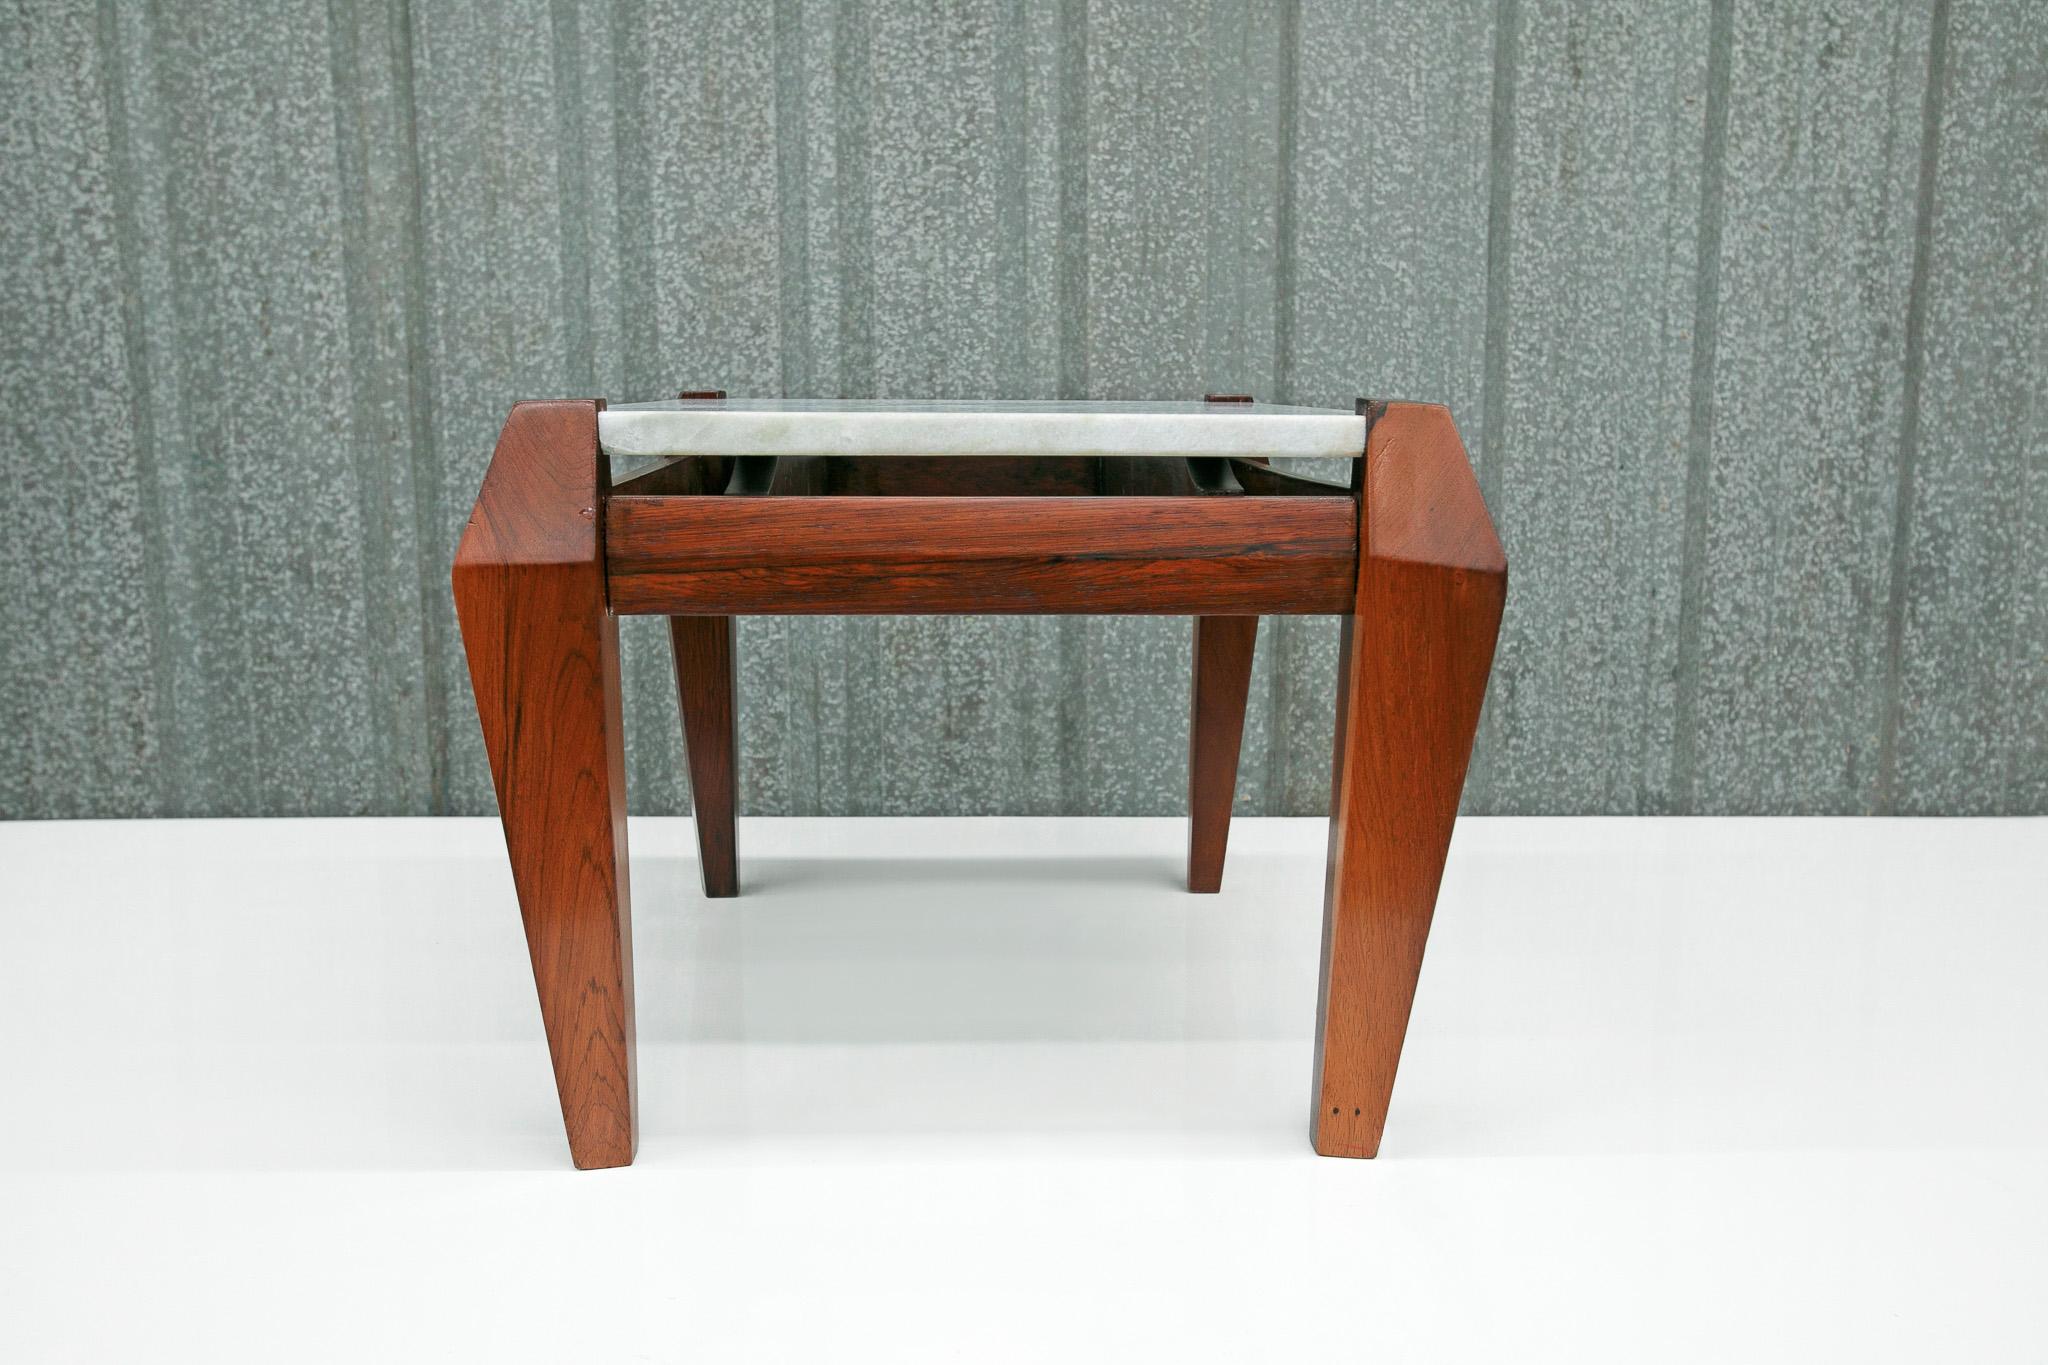 Brésilien Table basse moderne brésilienne en bois de feuillus et marbre, Jean Gillon, 1968, Brésil